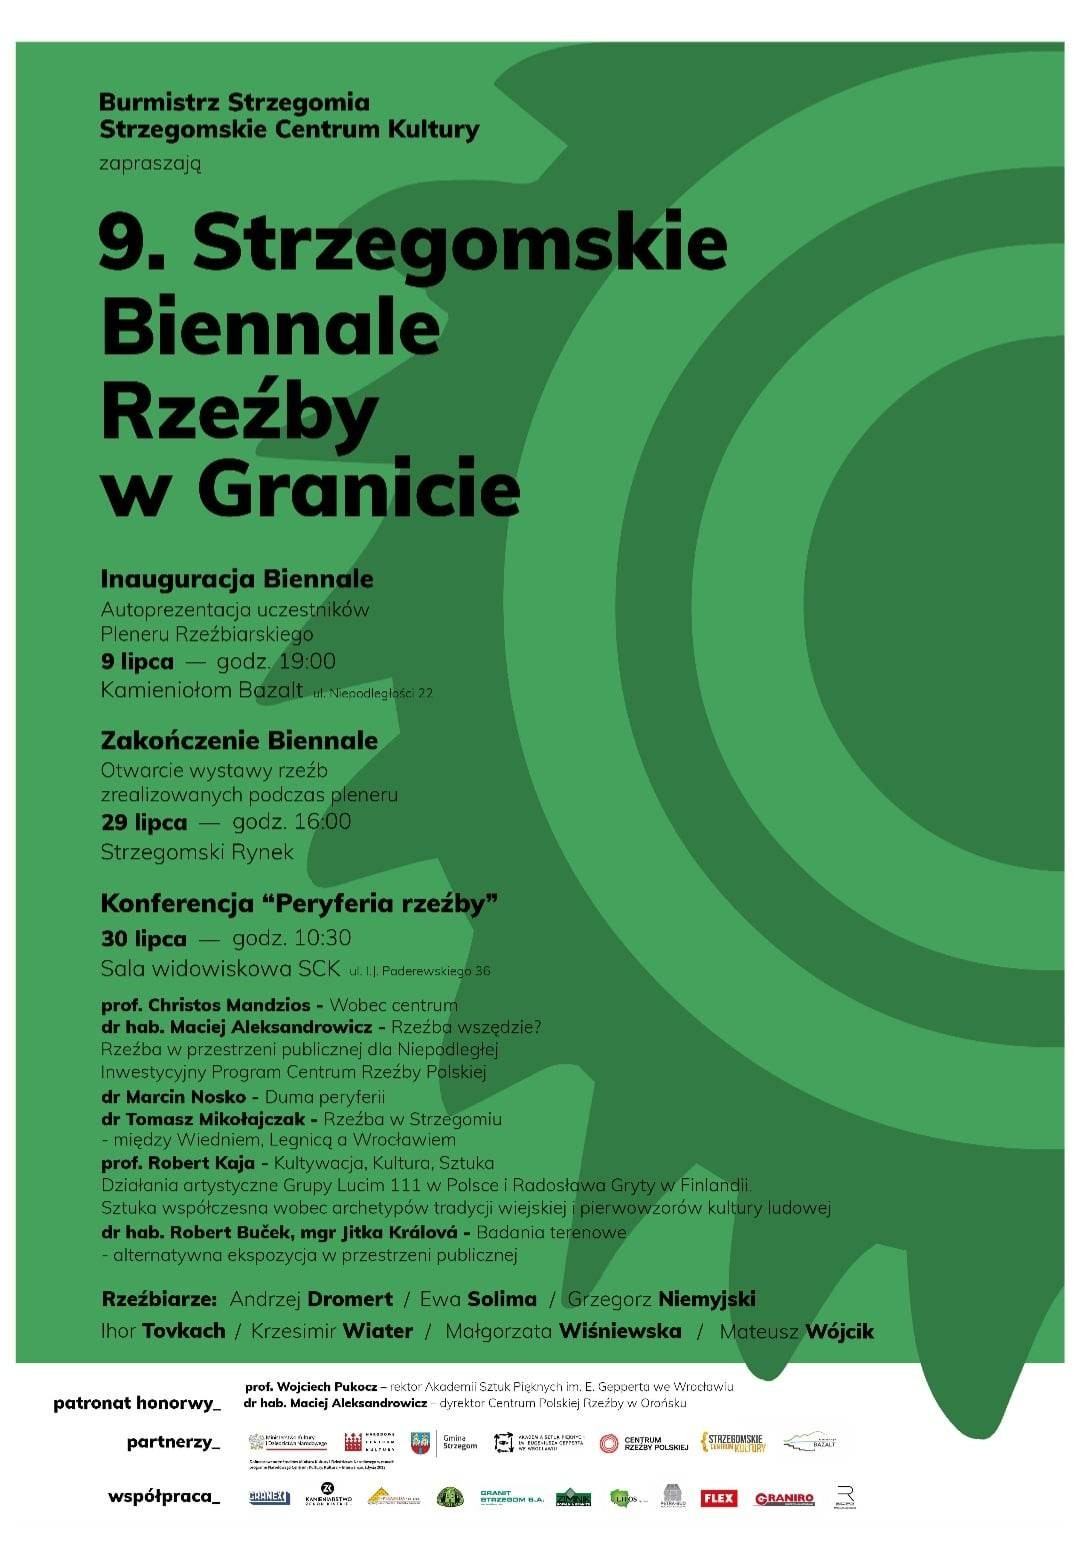 9 Strzegomskie Biennale Rzeźby w Granicie